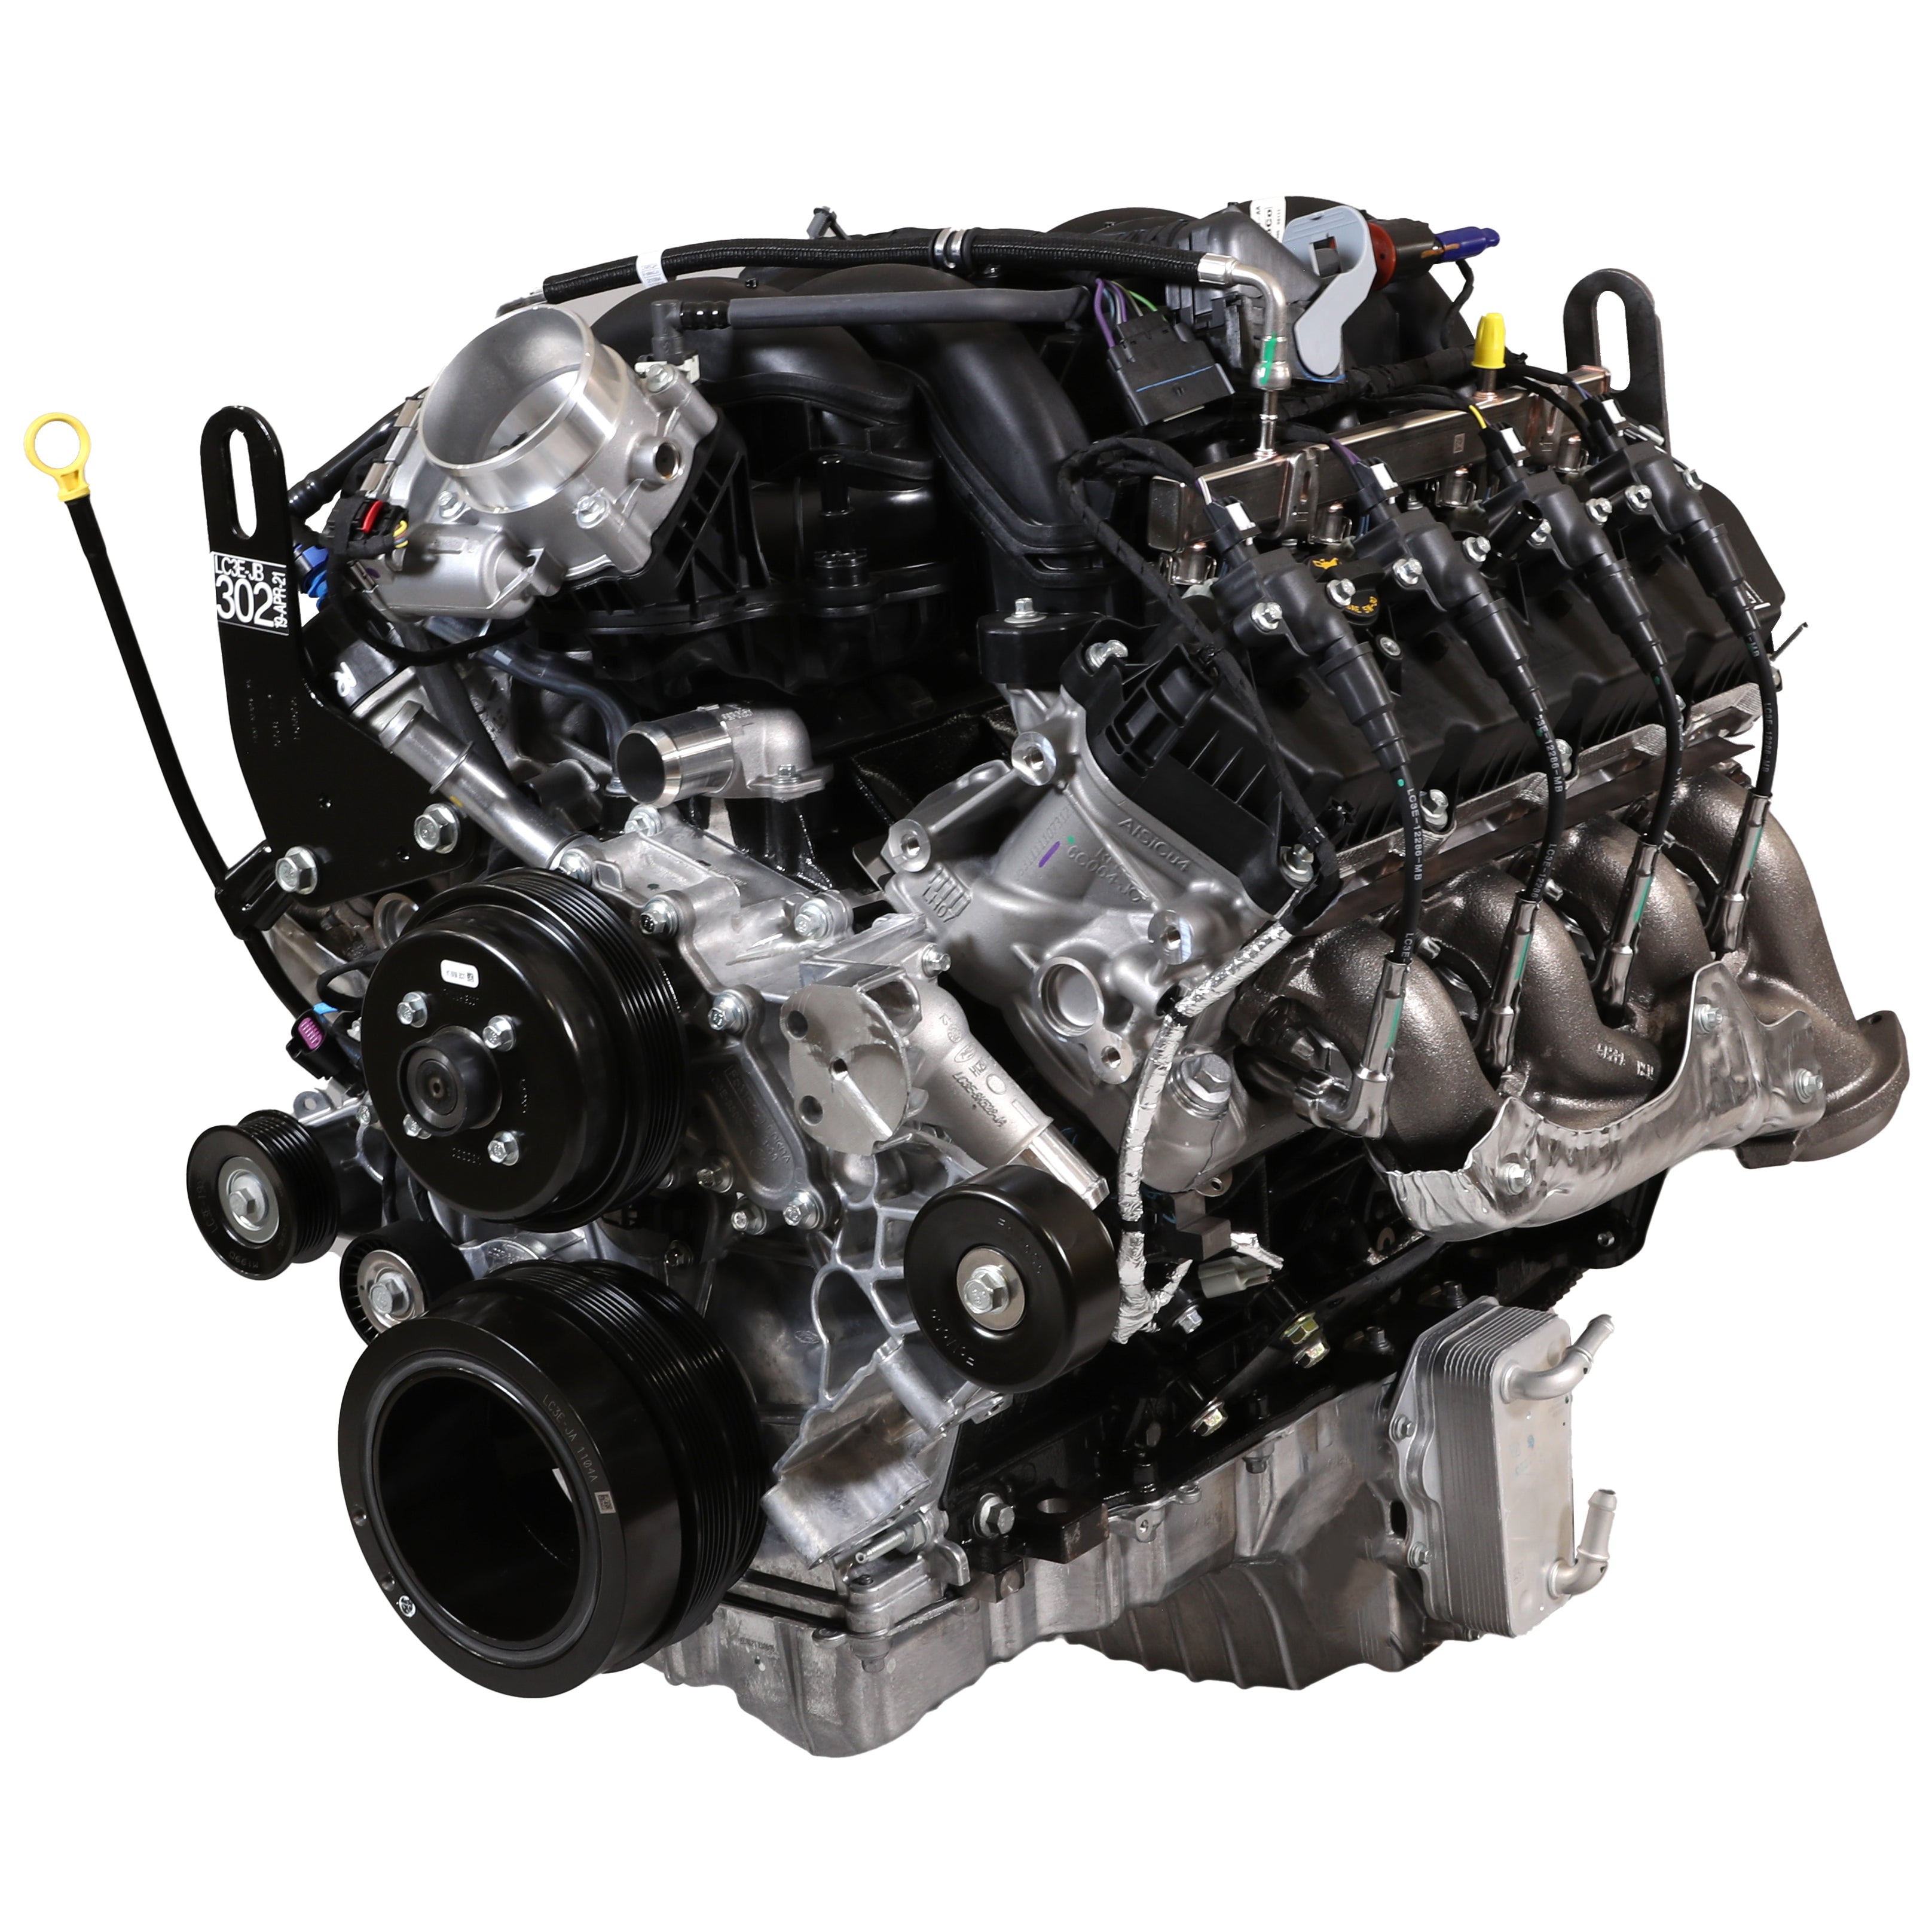 Κινητήρας κλουβιών Ford Performance 7.3L V8 430HP Super Duty "Godzilla"